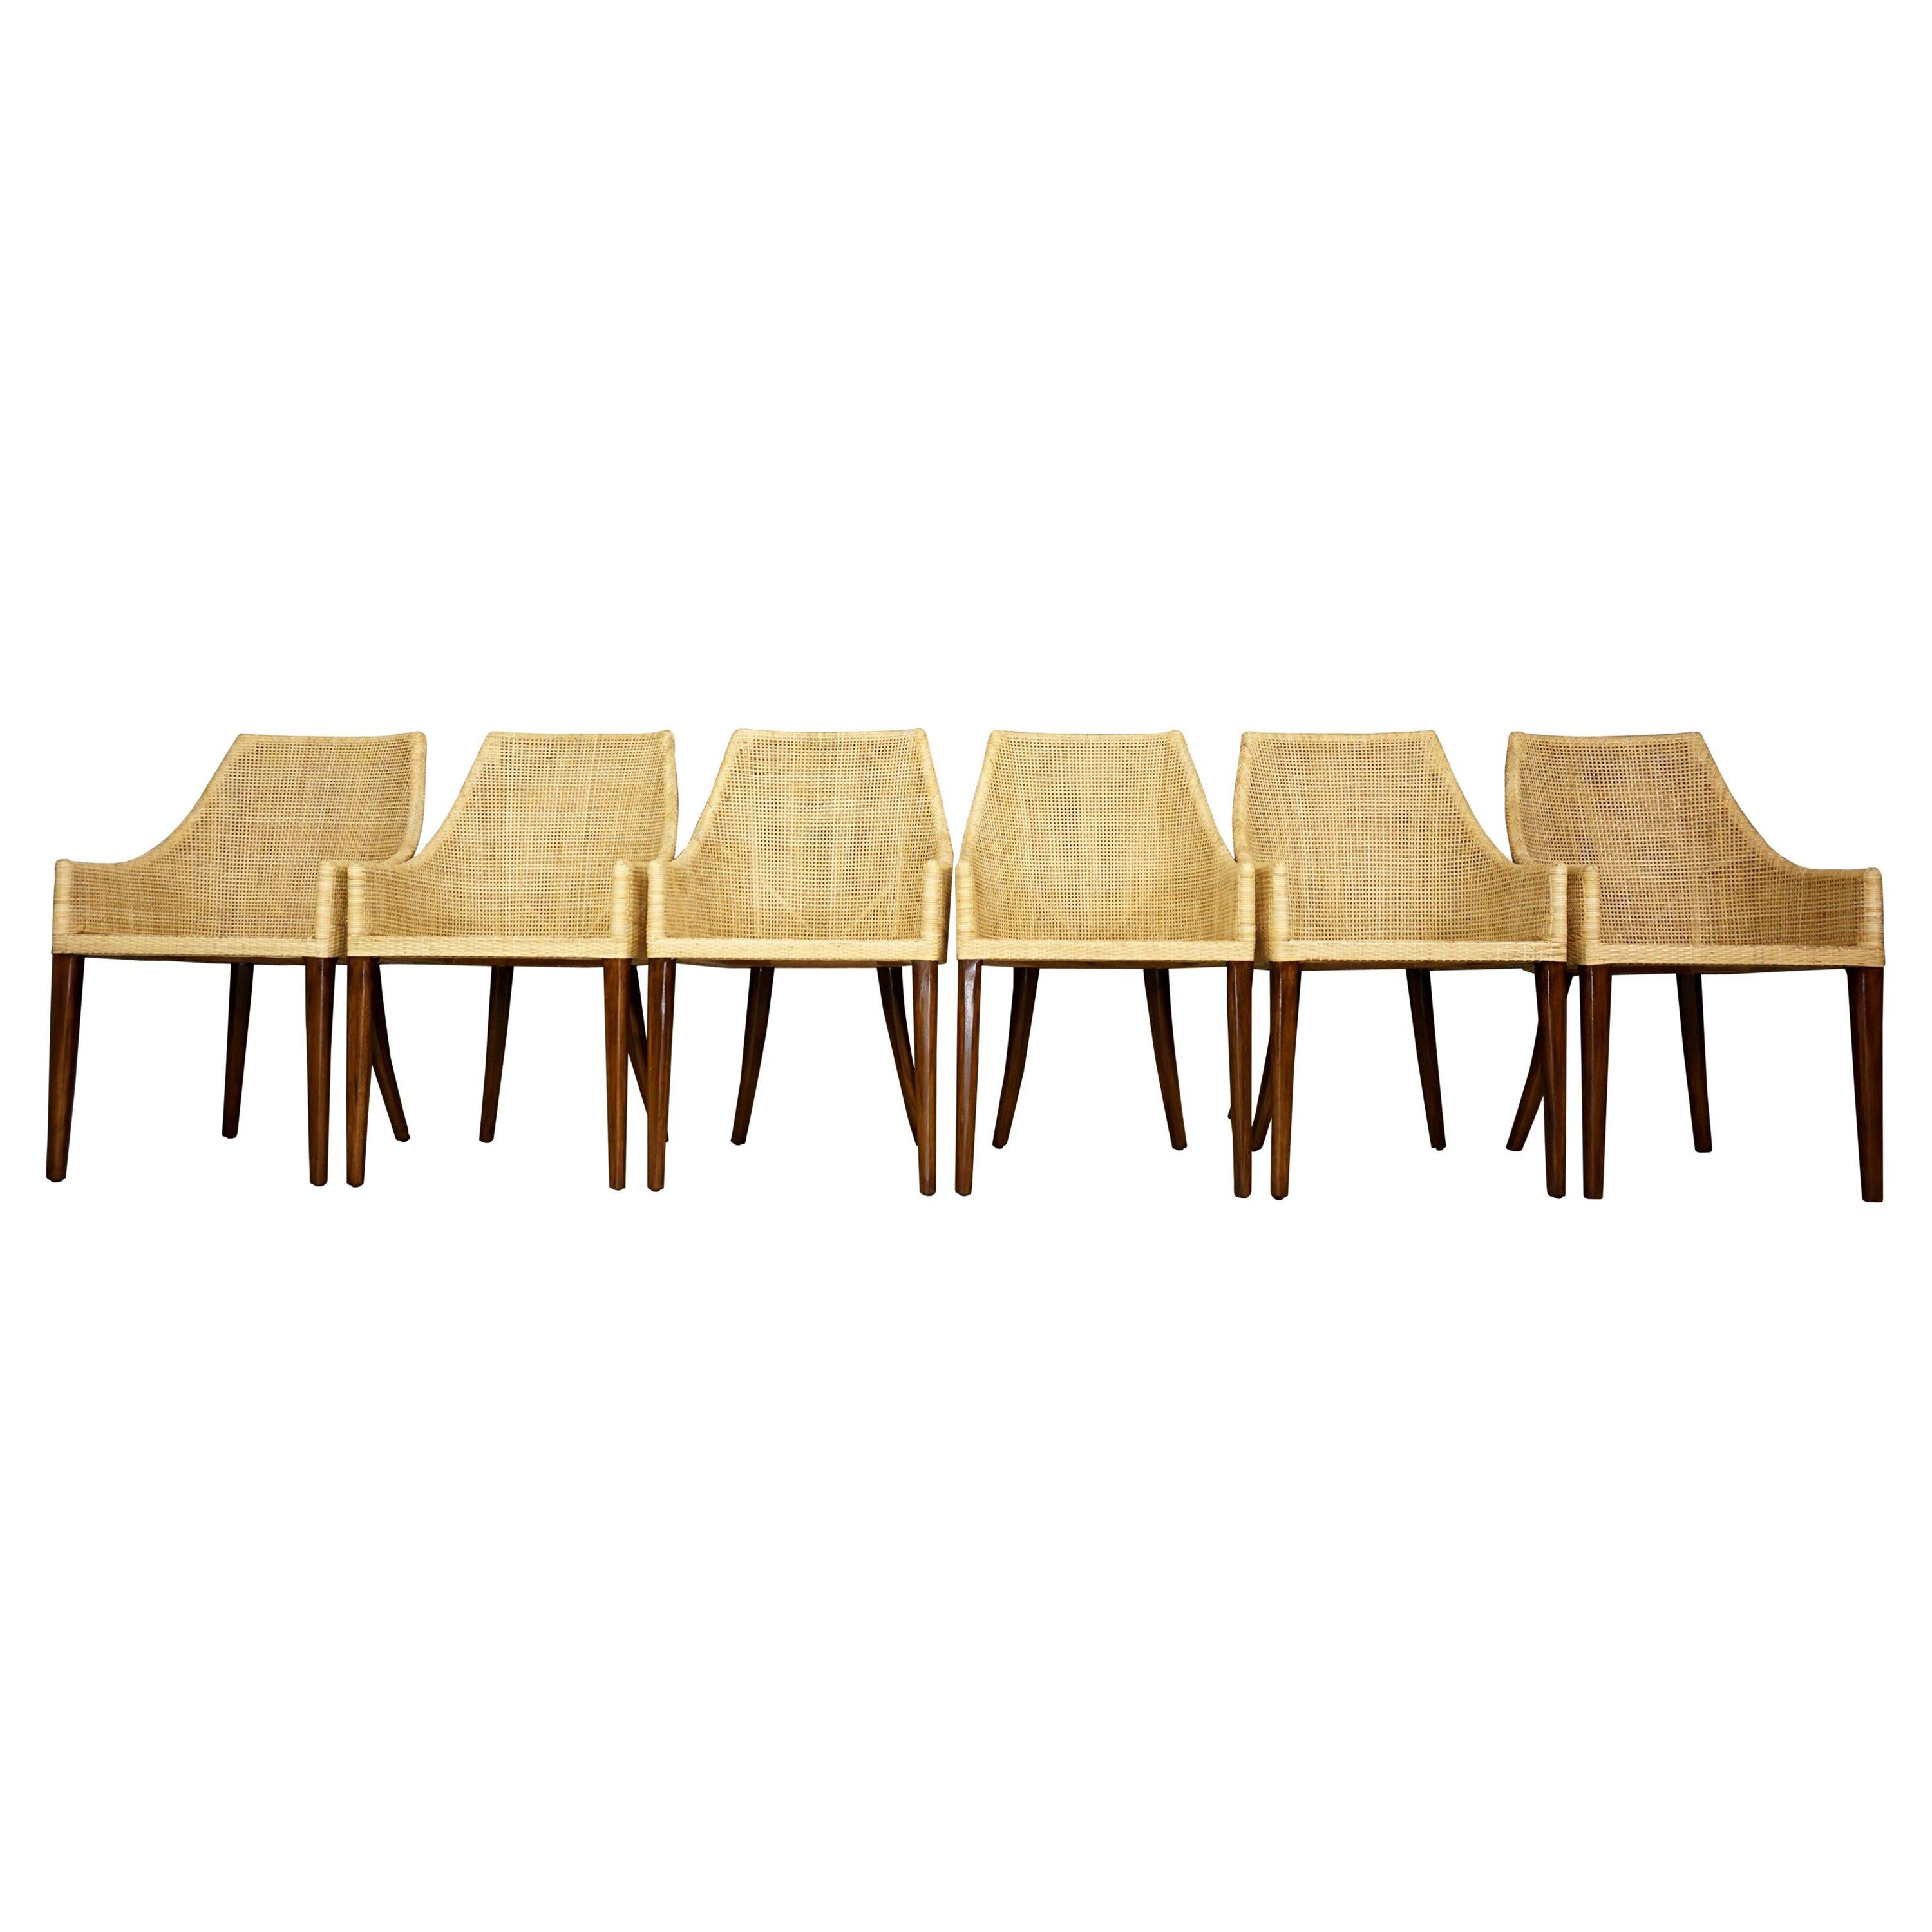 Set aus sechs Esszimmerstühlen aus Rattan und Holz, französisches Design